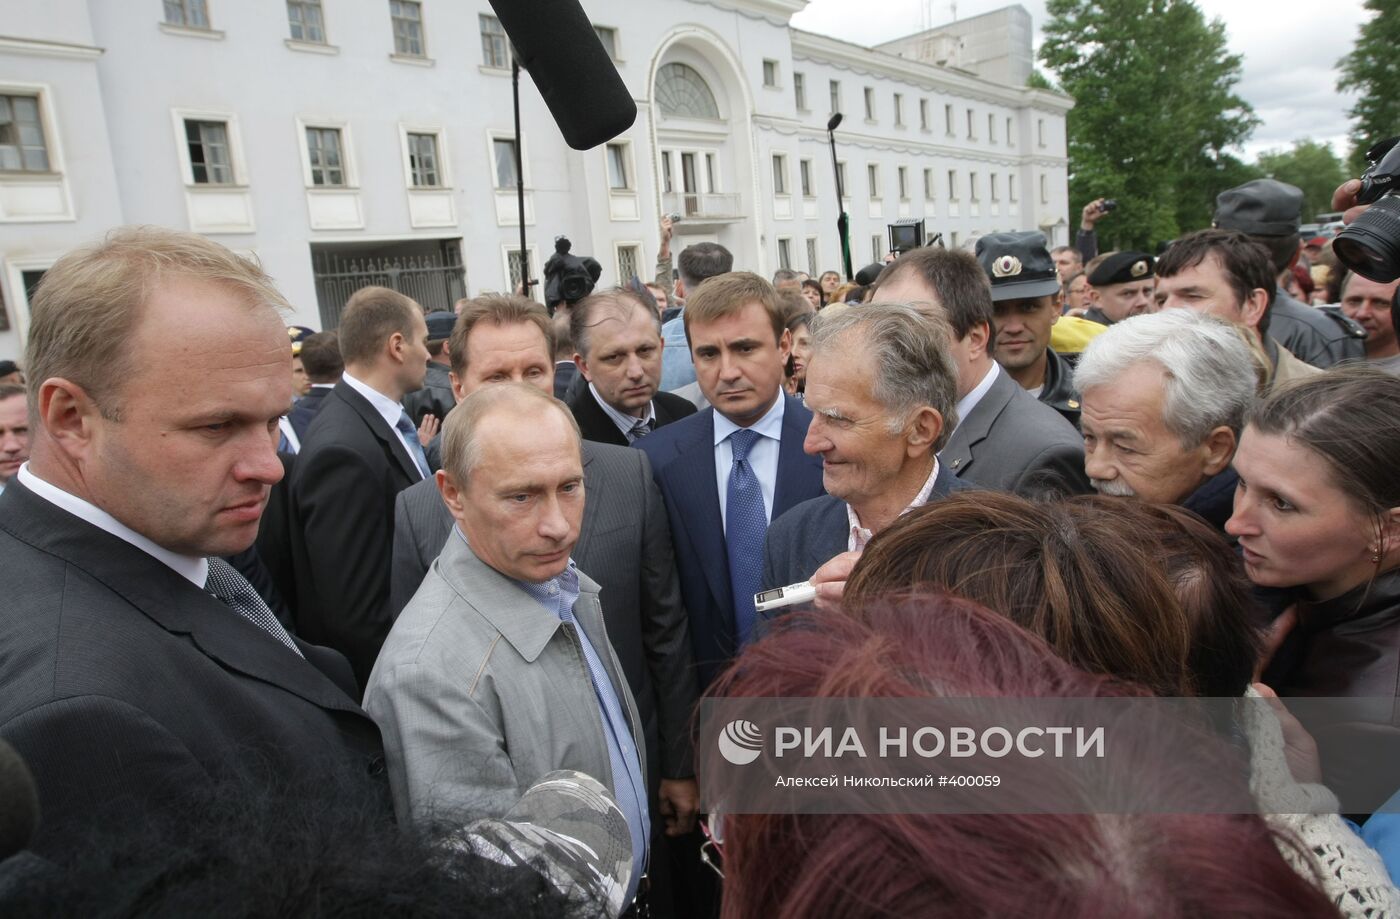 Владимир Путин встретился с жителями города Пикалево